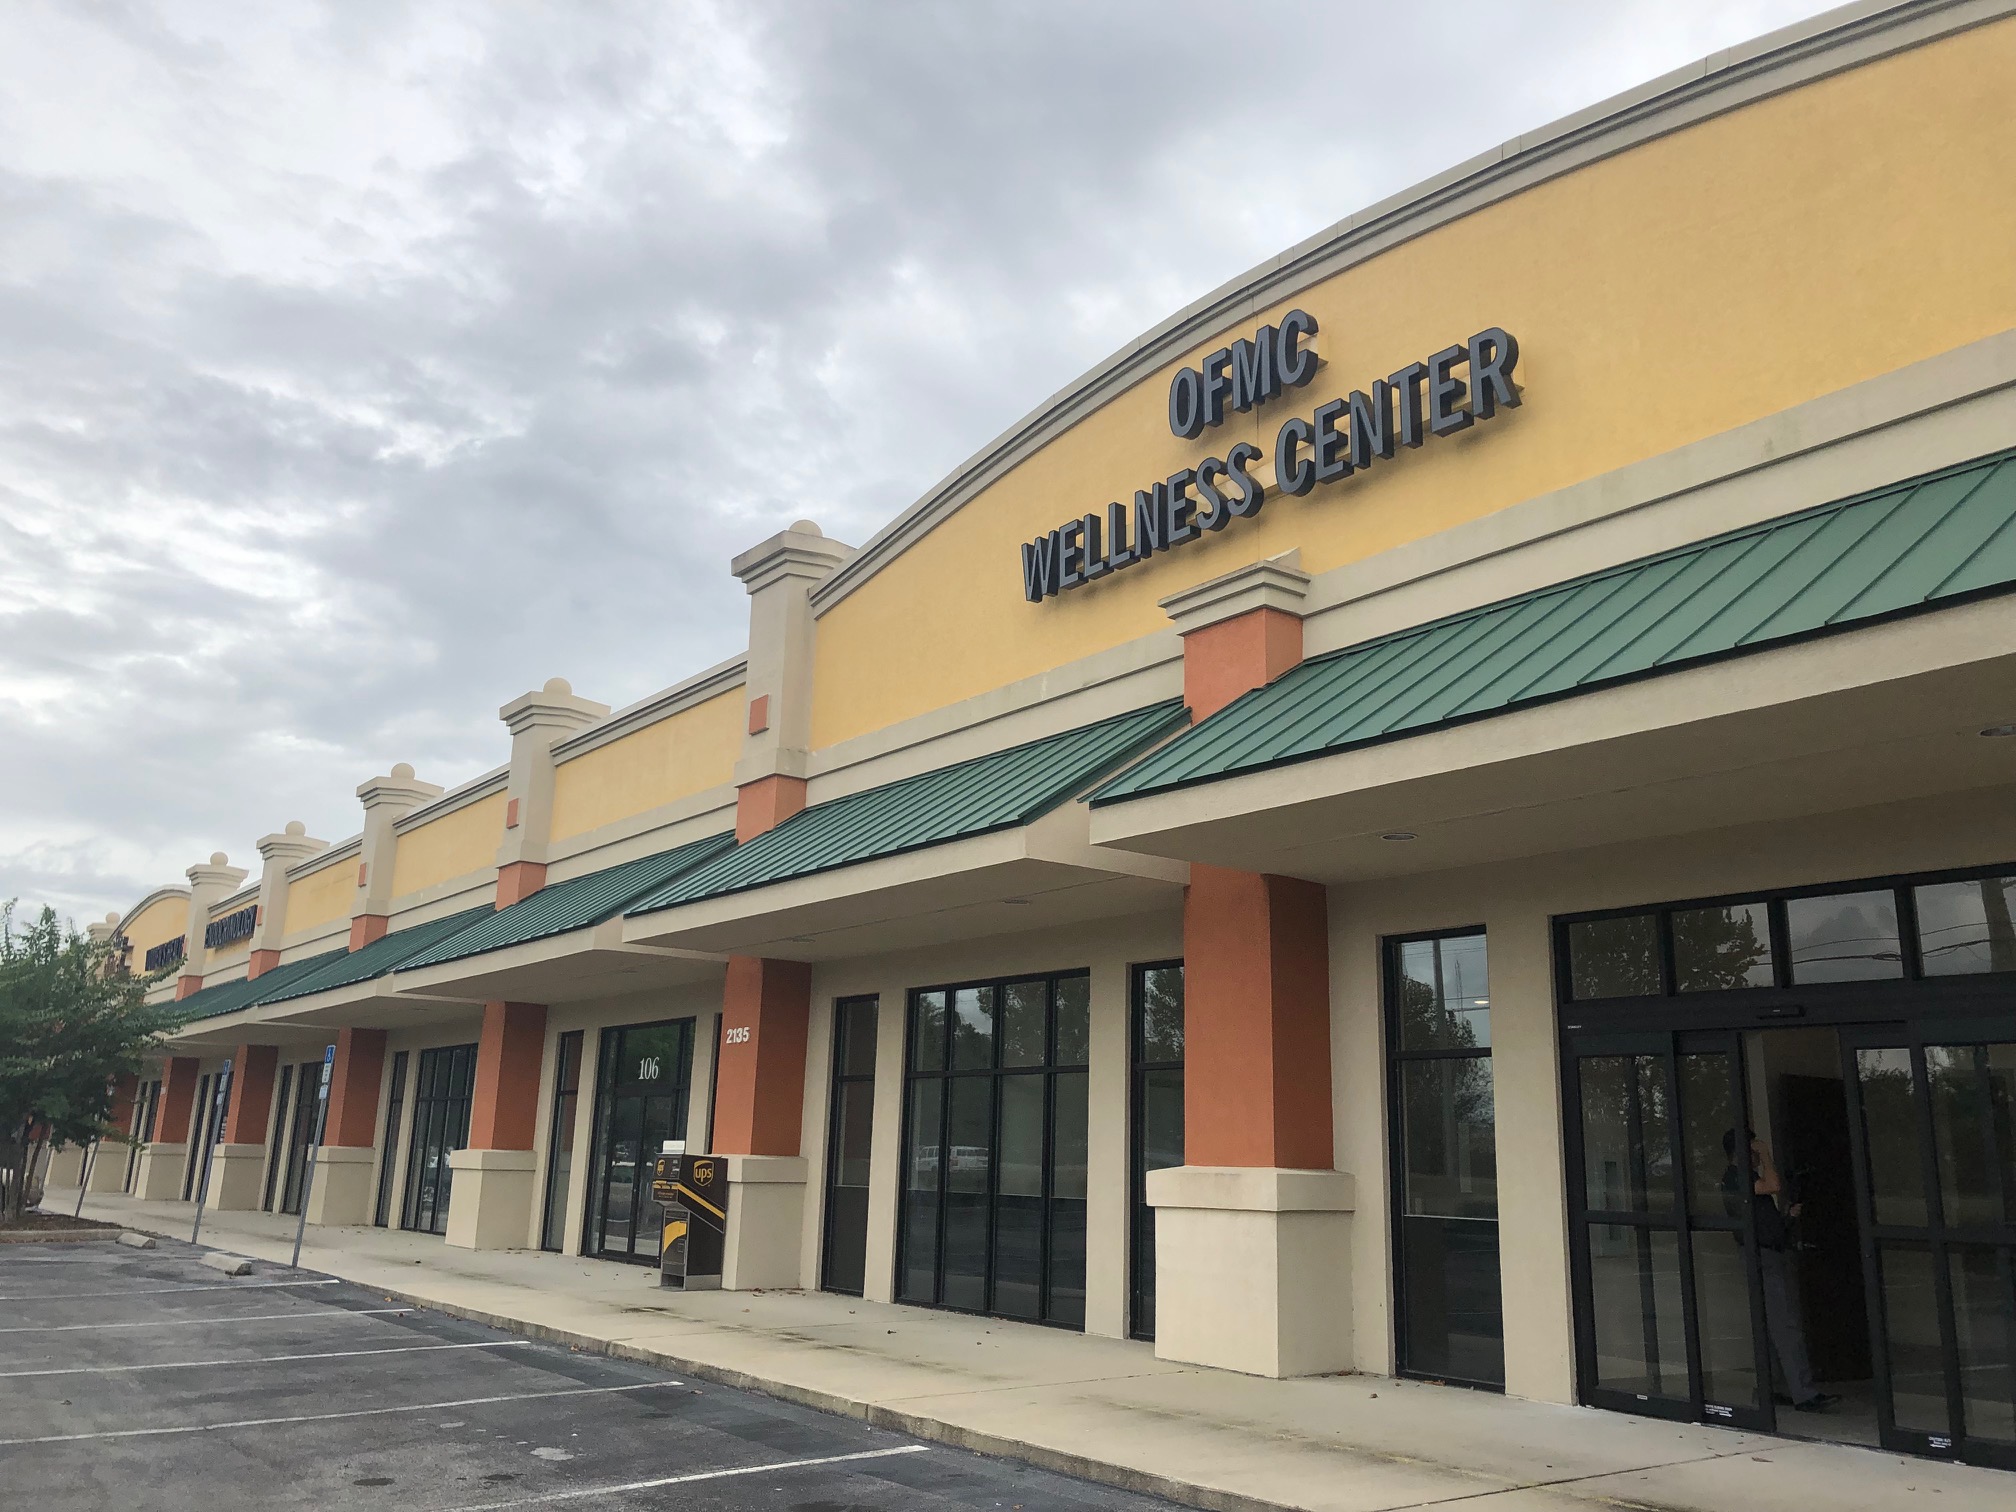 OFMC Wellness Center reviews | 2135 SW 19th Avenue Rd - Ocala FL